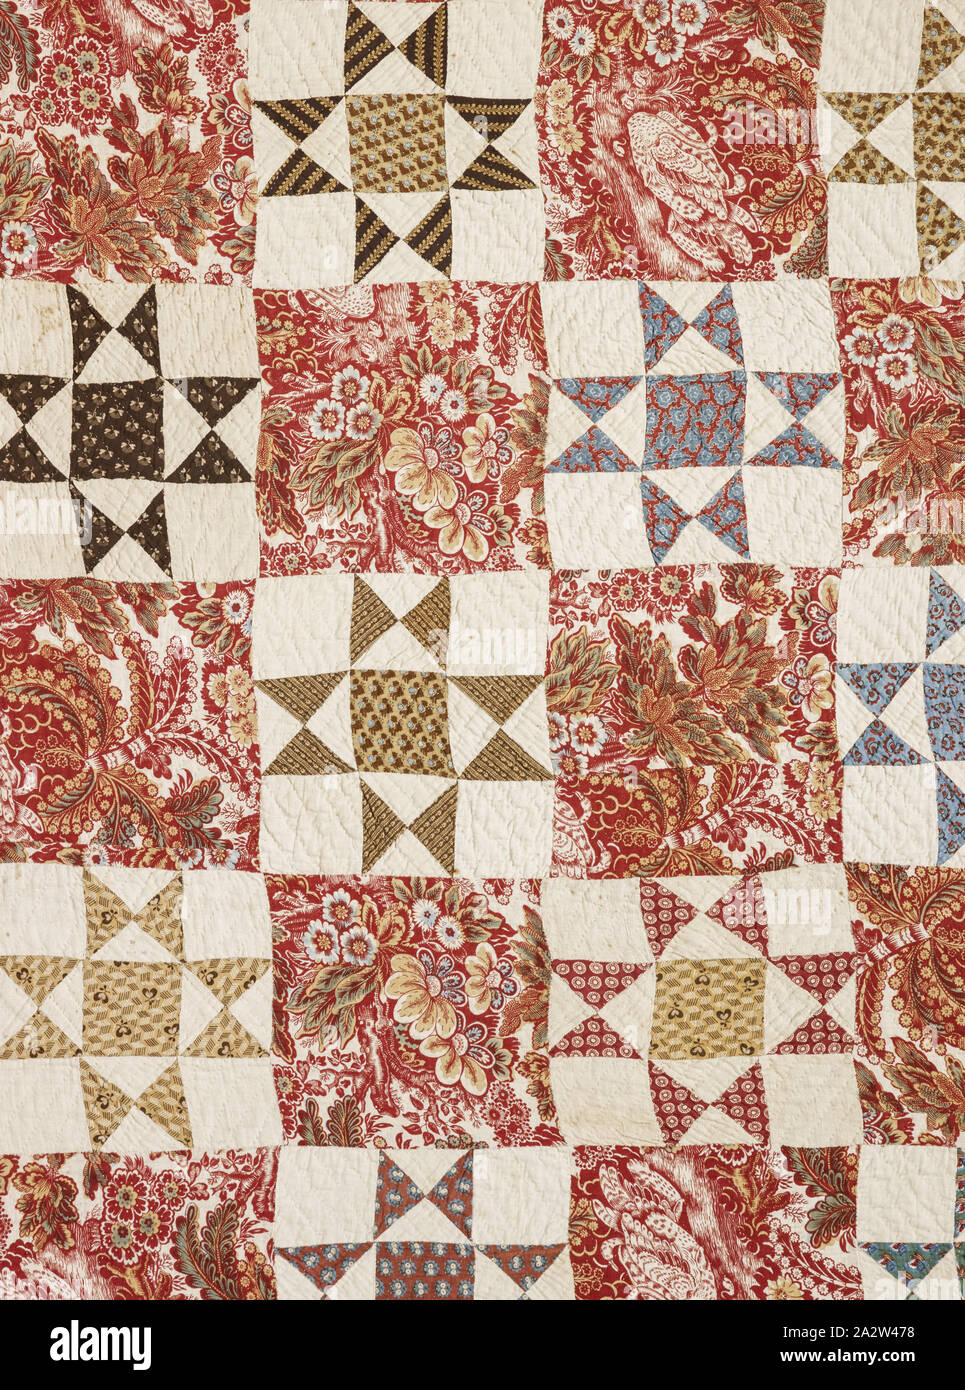 Étoile variable (courtepointe), Catherine Backinstos (américain, vers 1760-début de 1800), 1775-1783, le coton, et piqué 96-1/2 x 96 po, du textile et des arts de la mode Banque D'Images